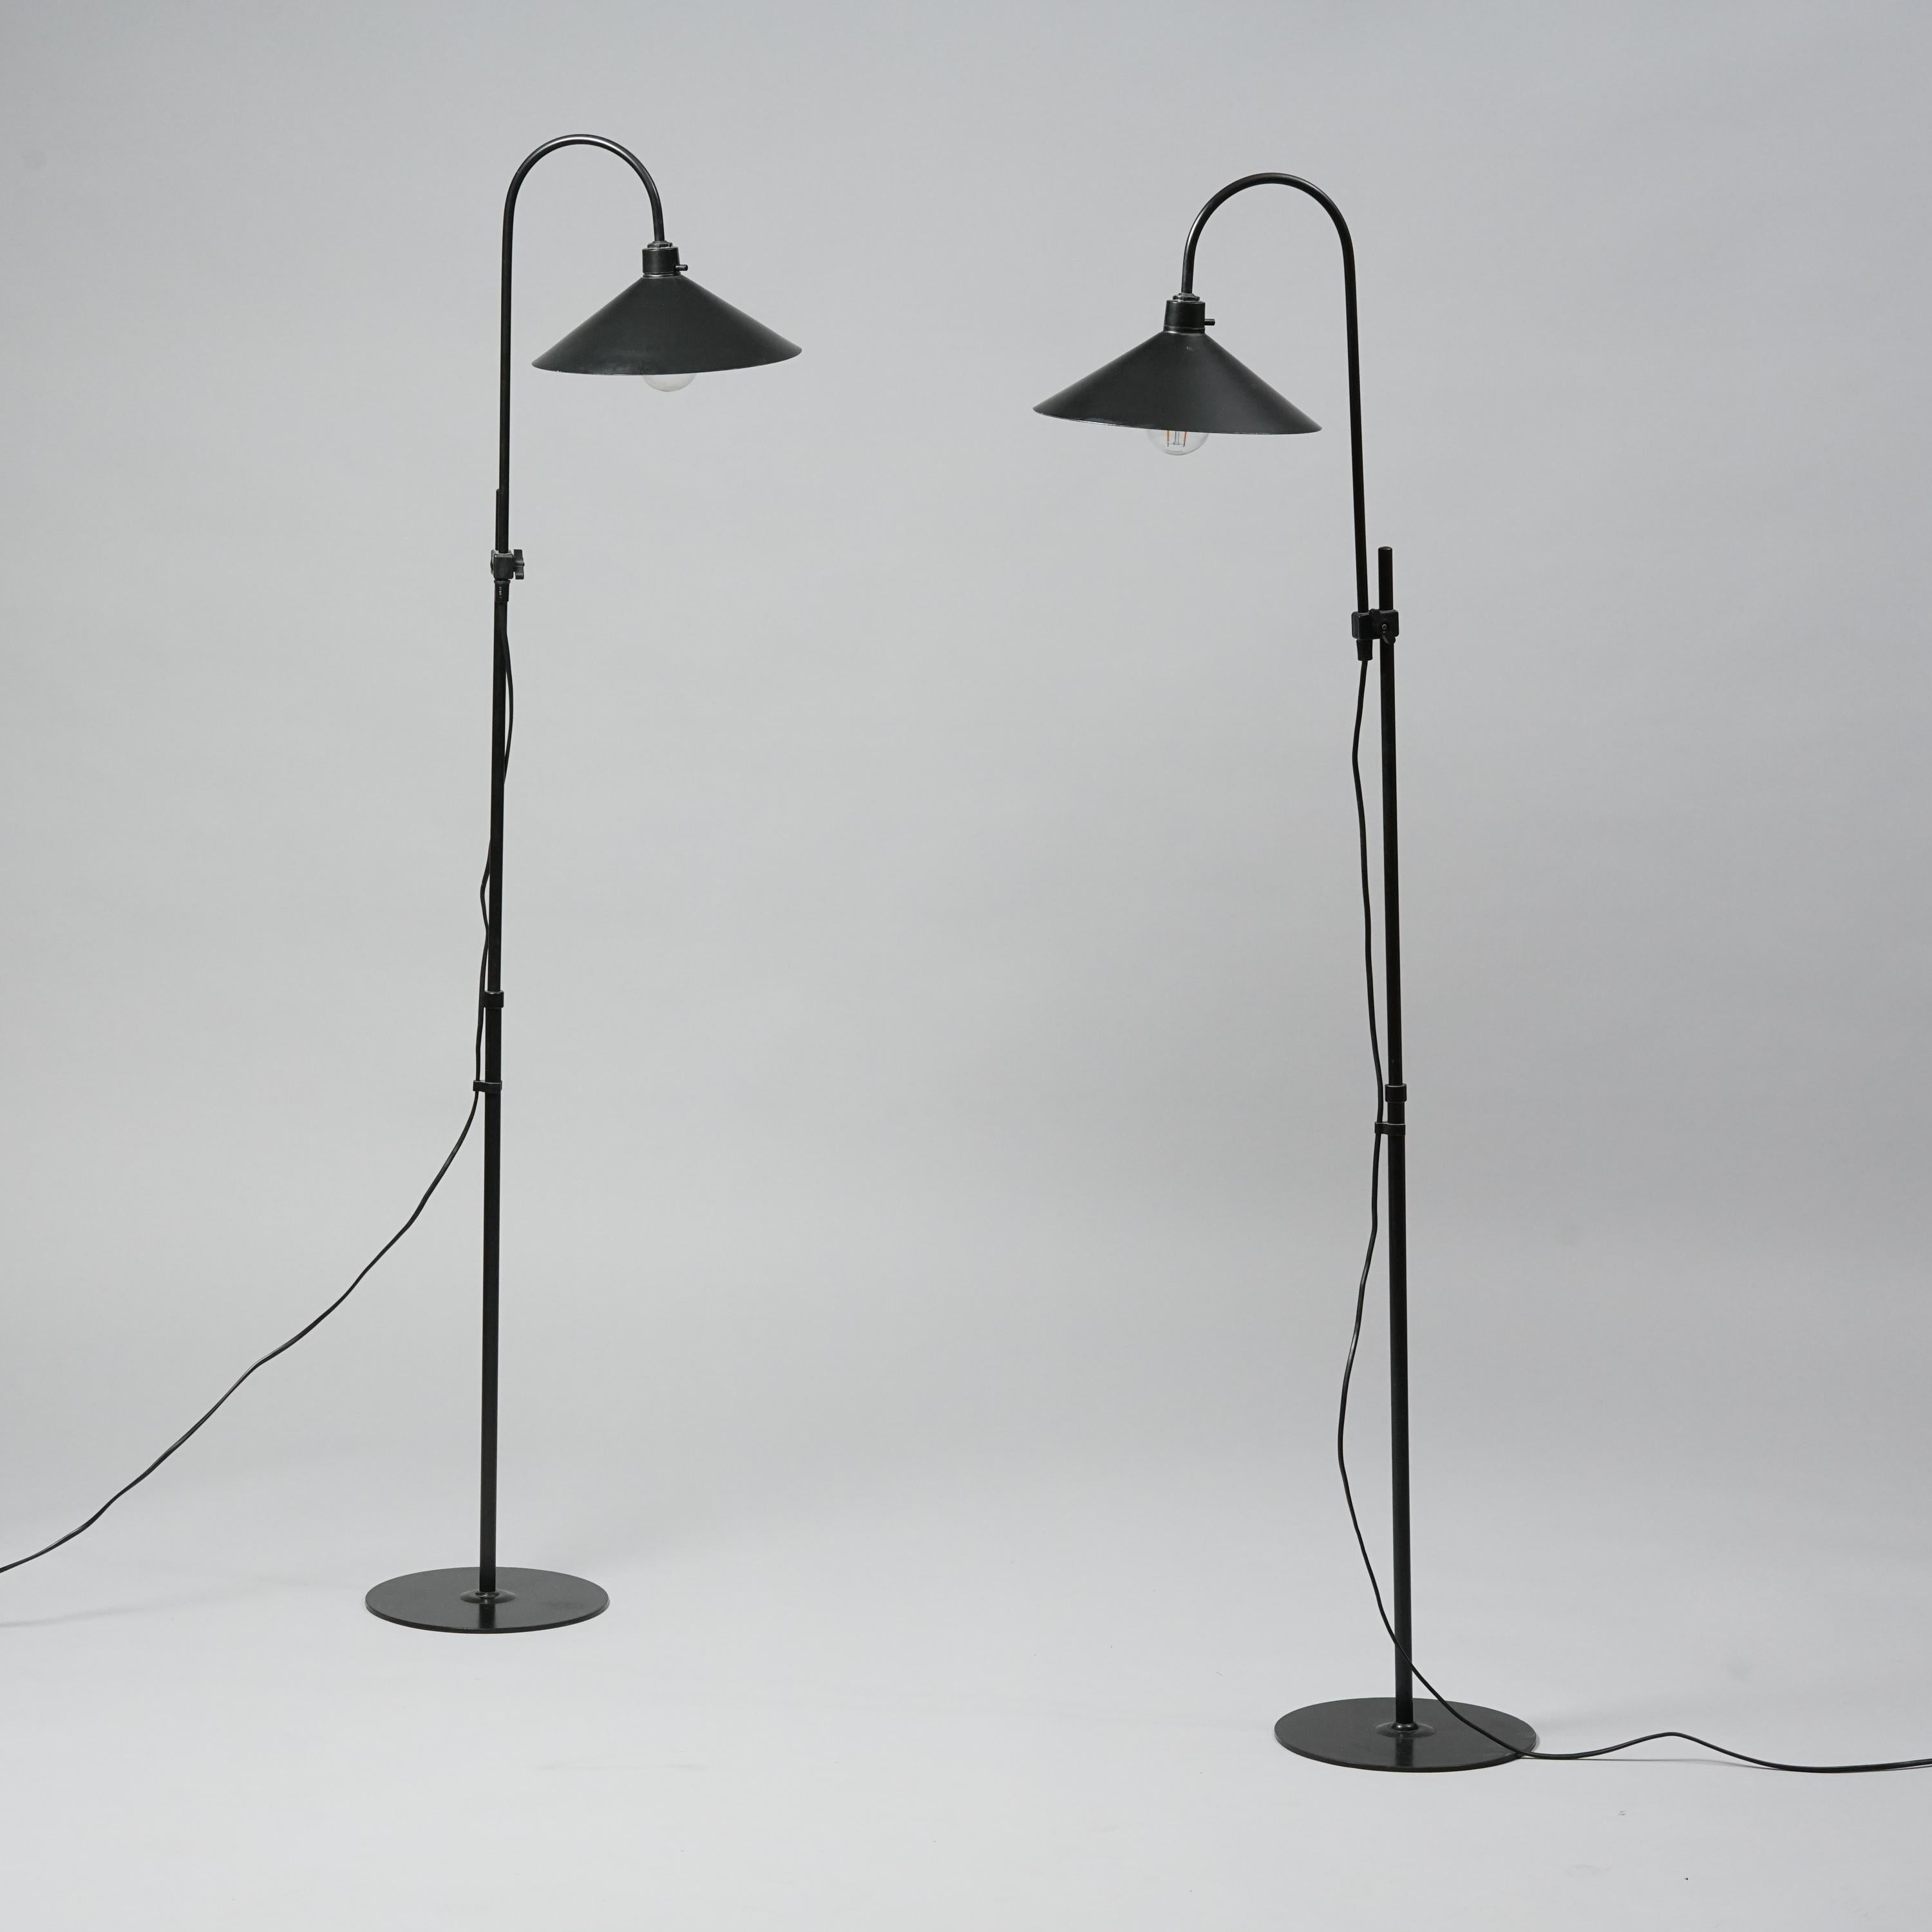 Frandsen Floor Lamp - 6 For Sale on 1stDibs